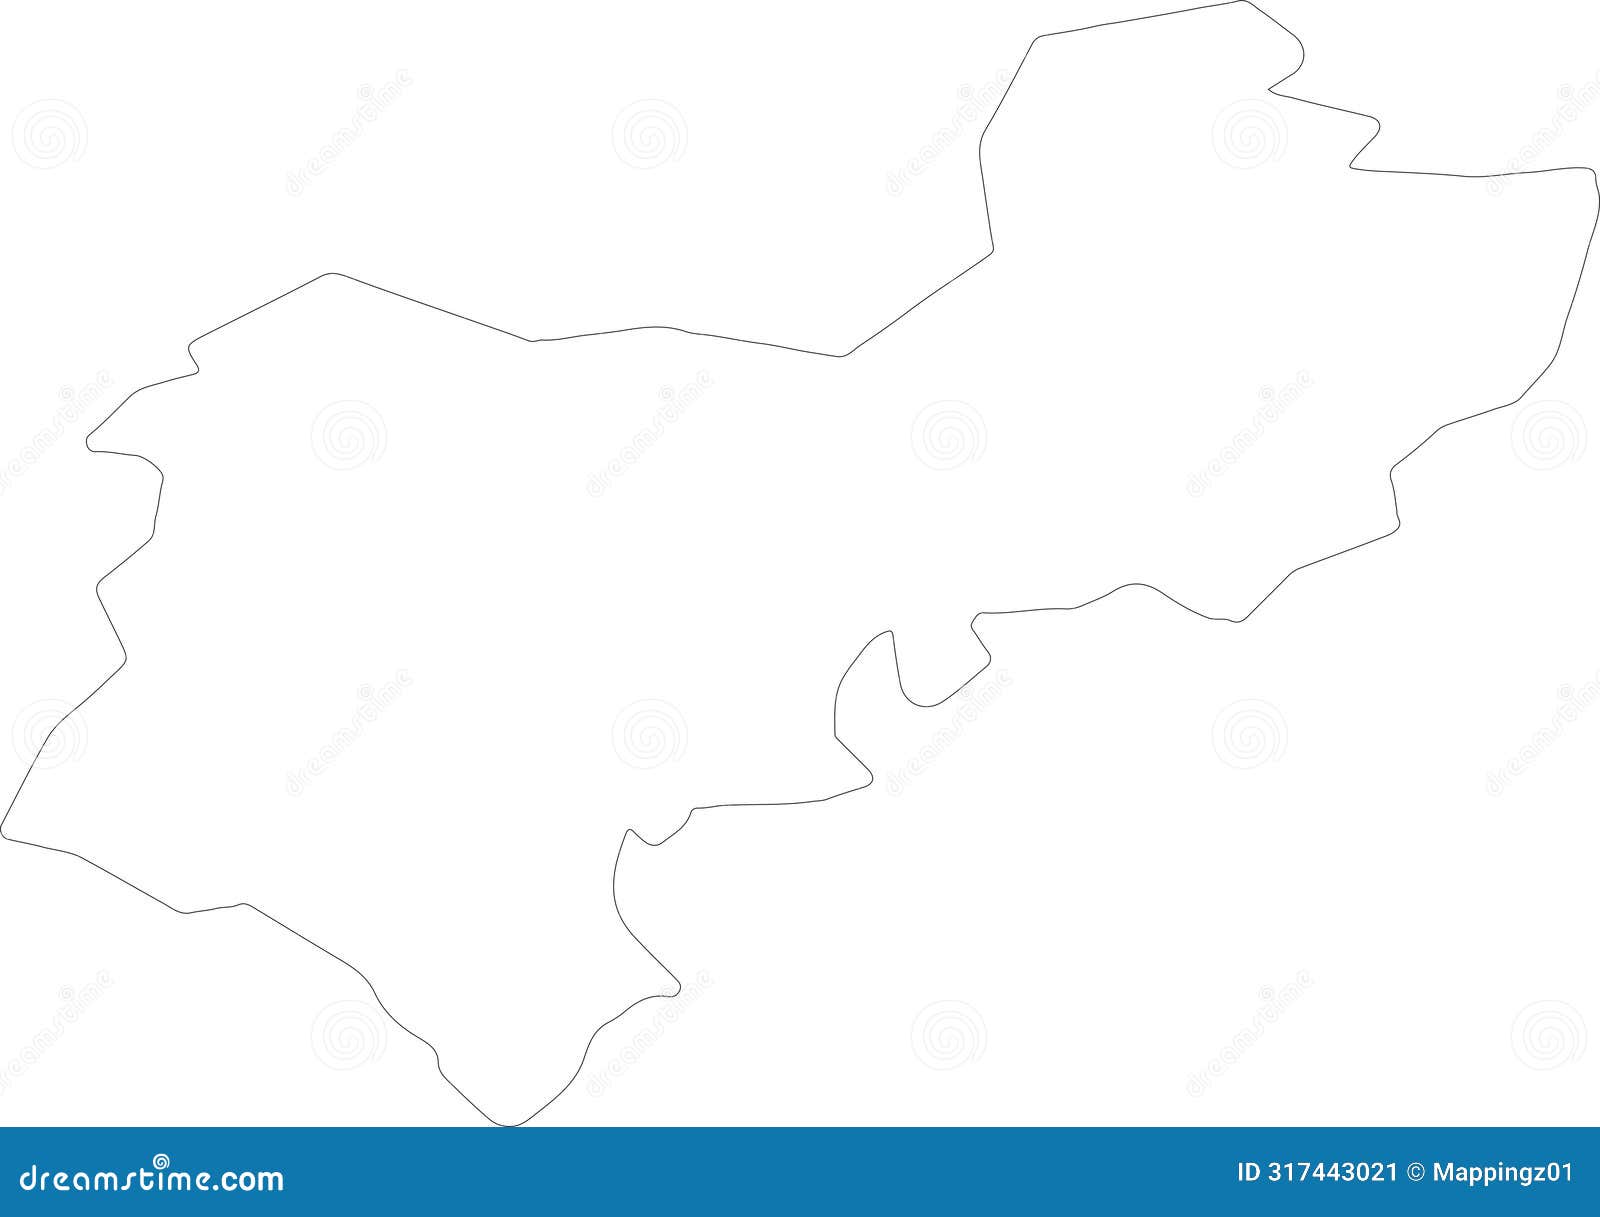 central bedfordshire united kingdom outline map